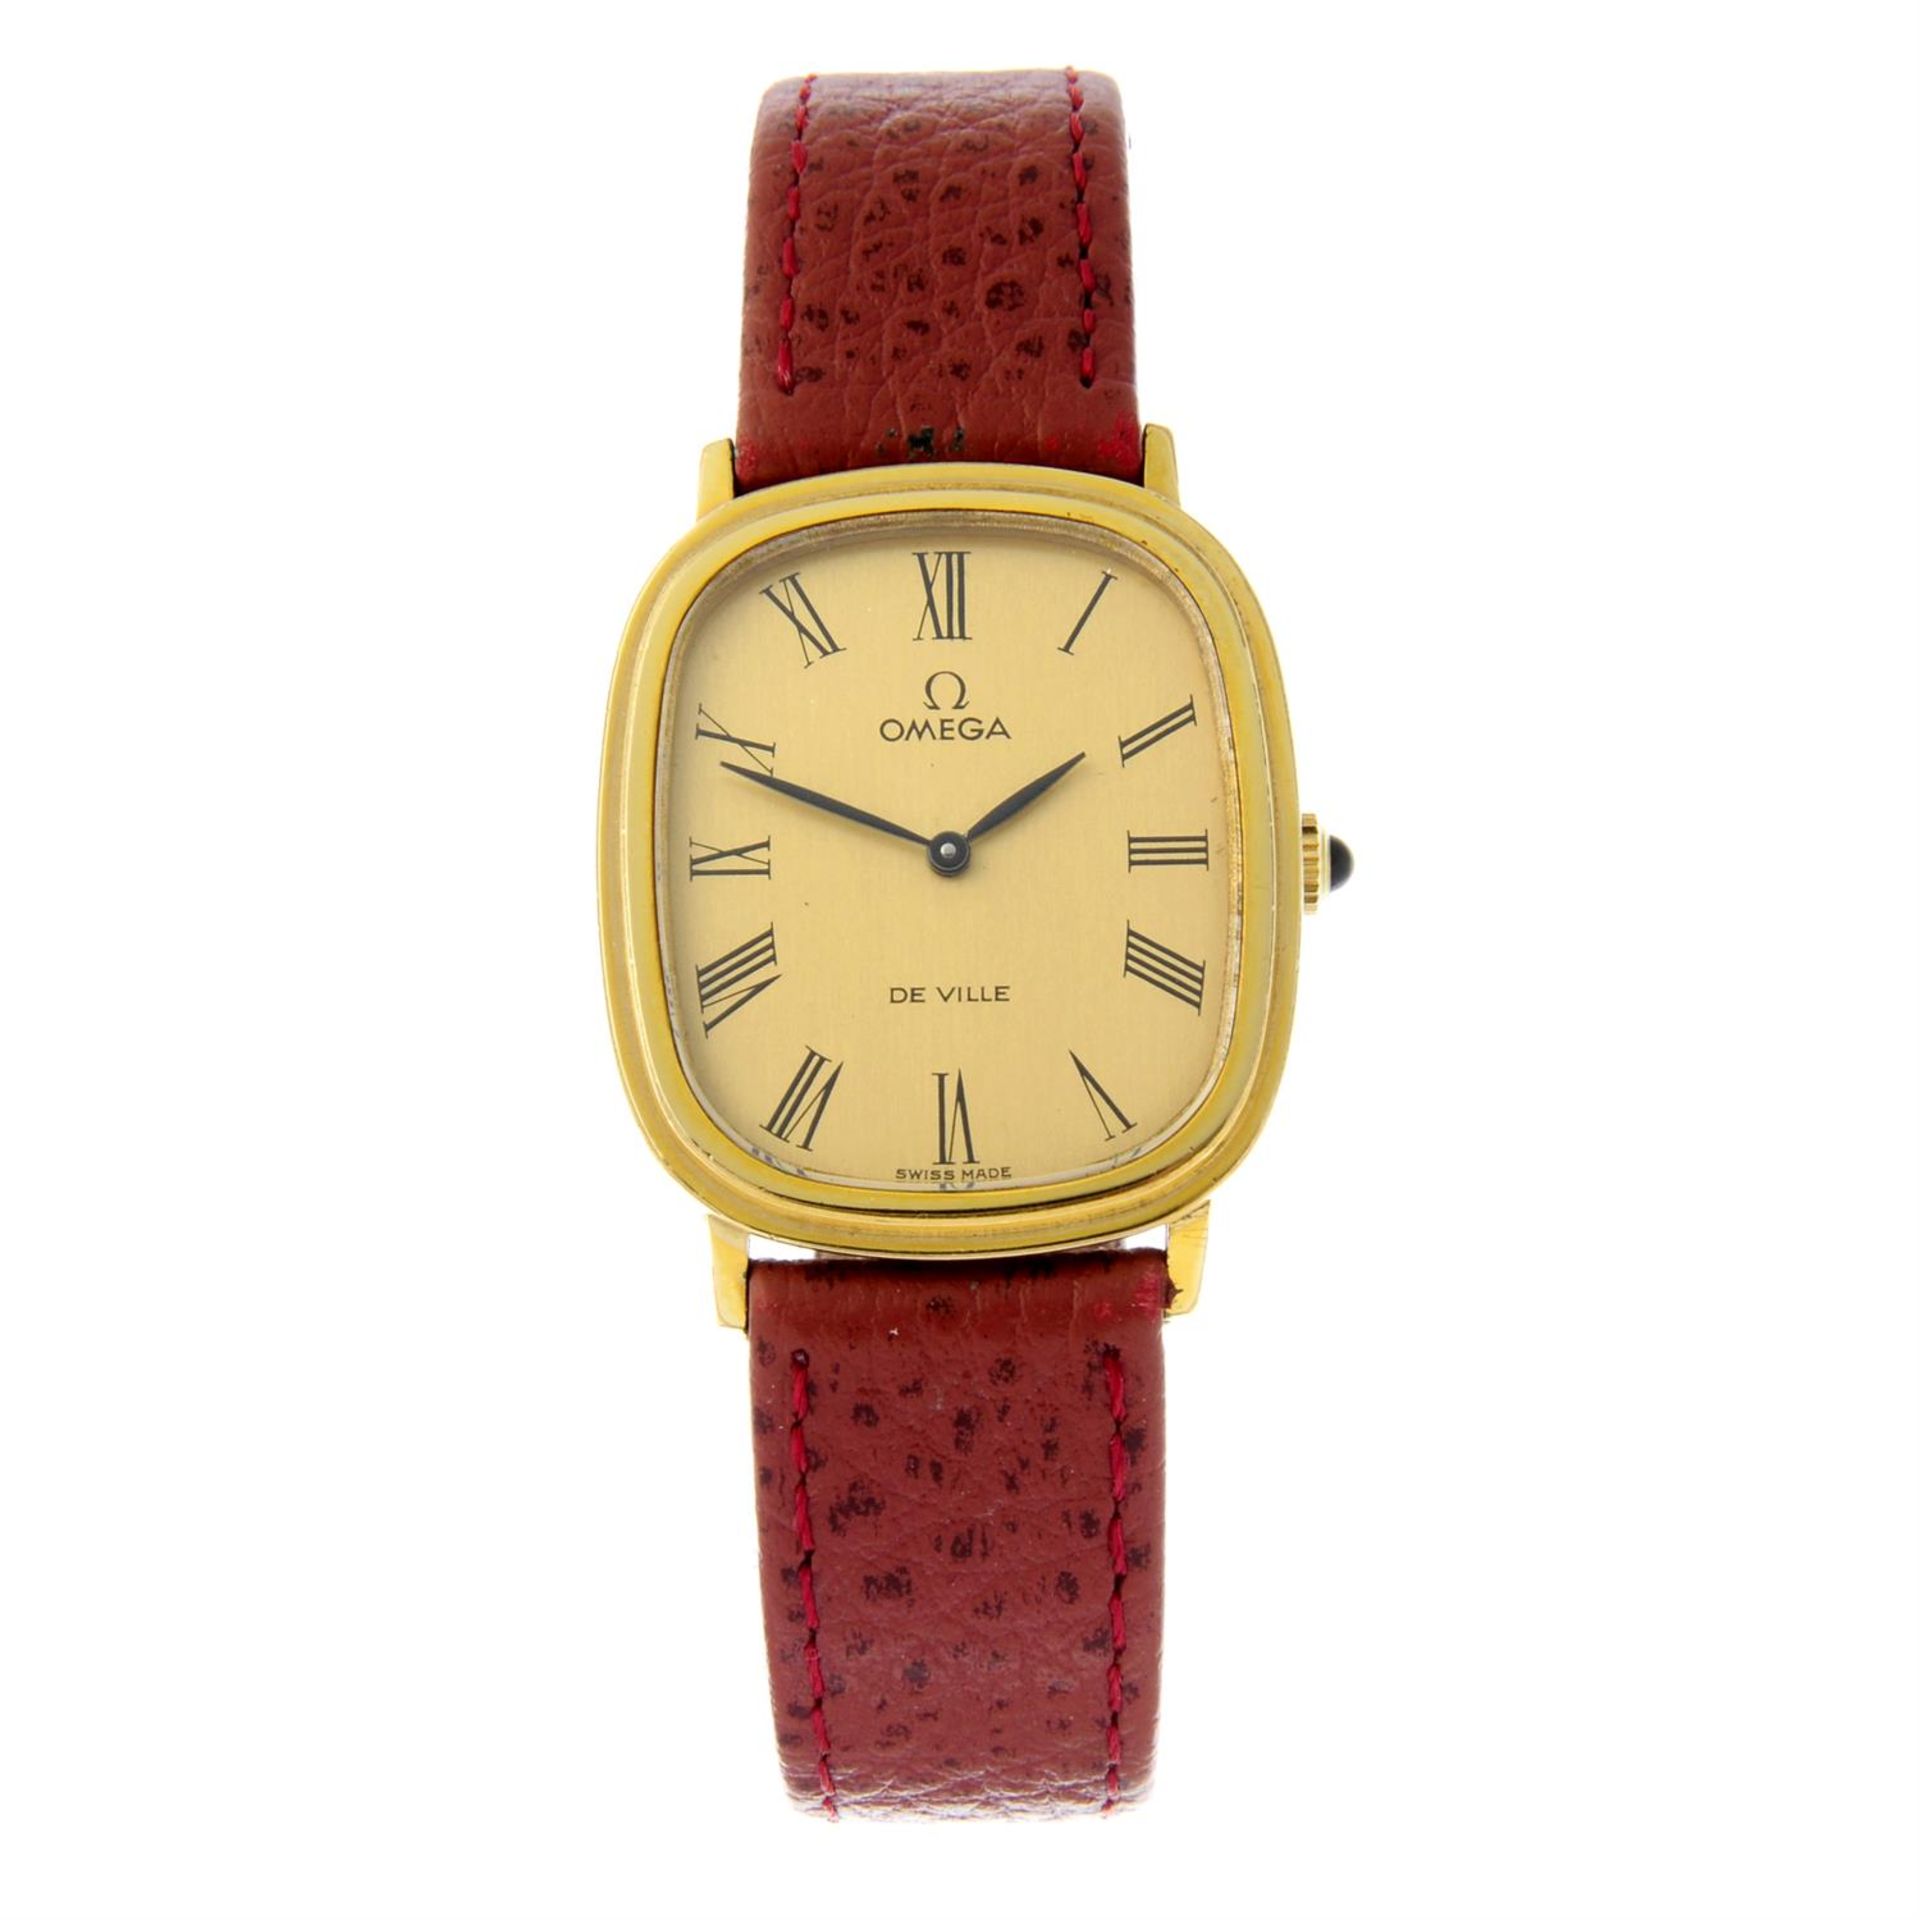 OMEGA - a gold plated De Ville wrist watch, 27x31mm.